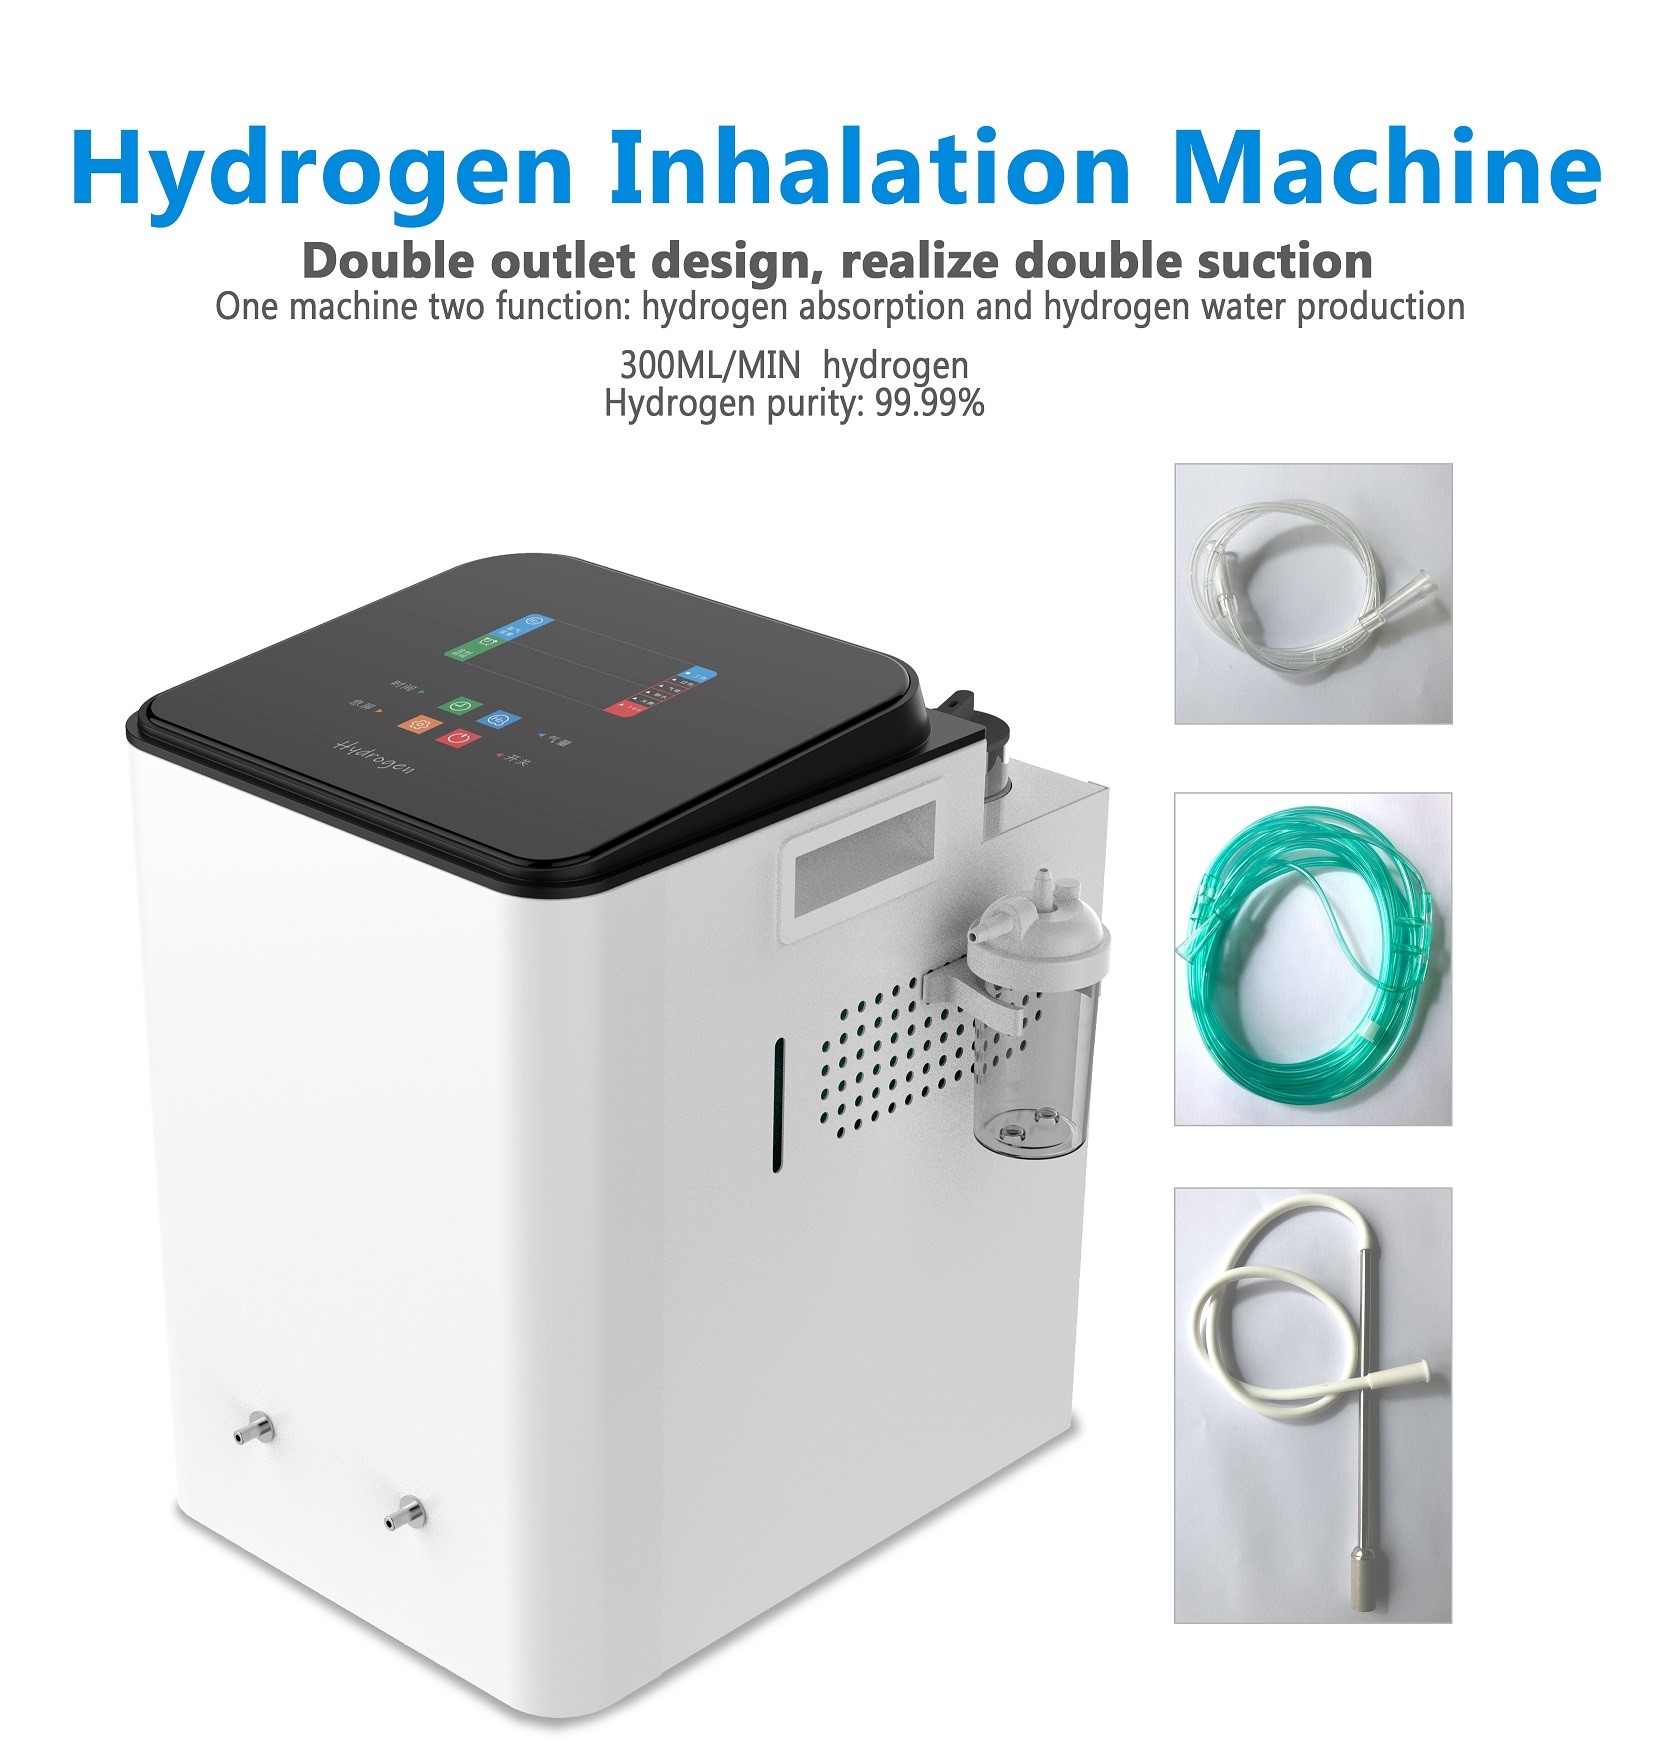 Guía para configurar y usar una máquina de inhalación de hidrógeno